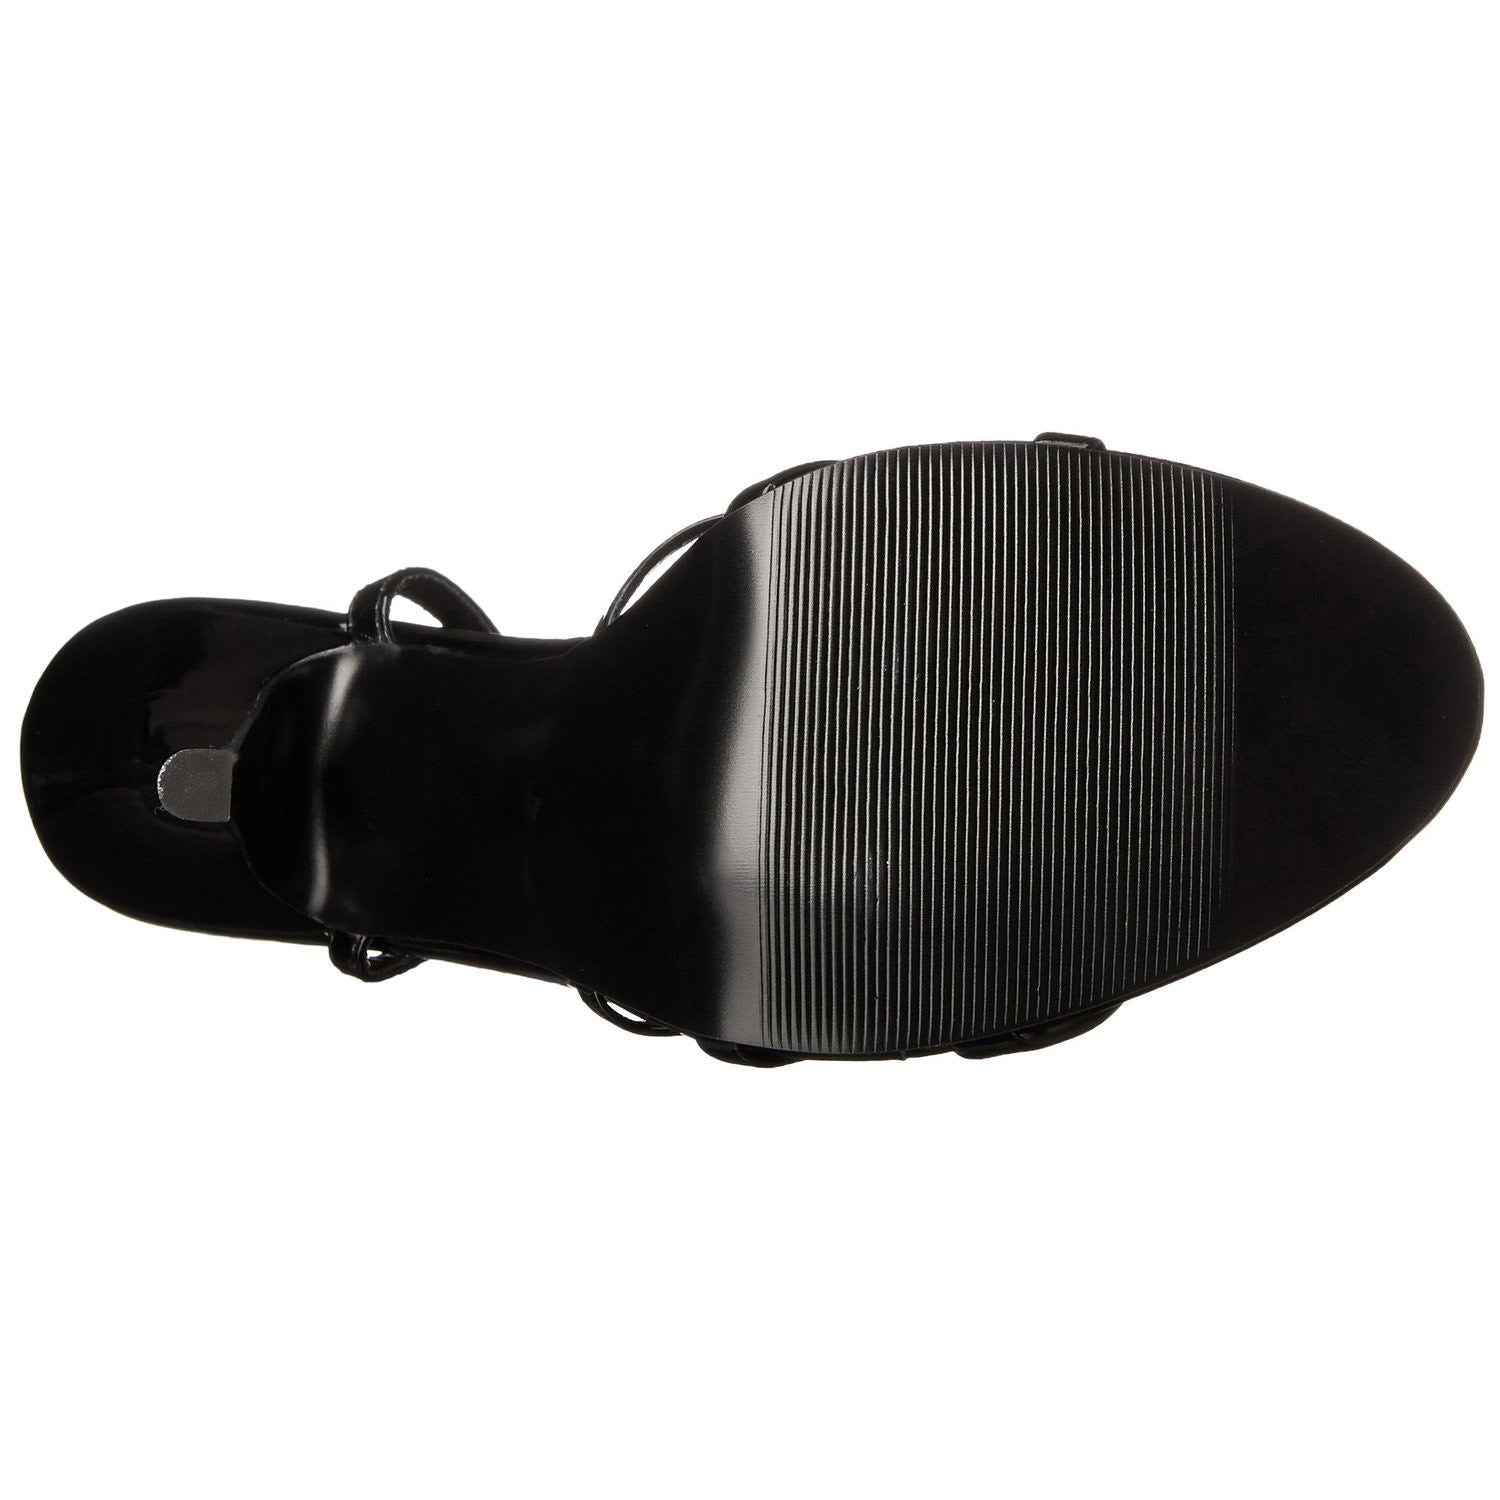 DEVIOUS DOMINA-108 Black Pat Ankle Strap Sandals - Shoecup.com - 8